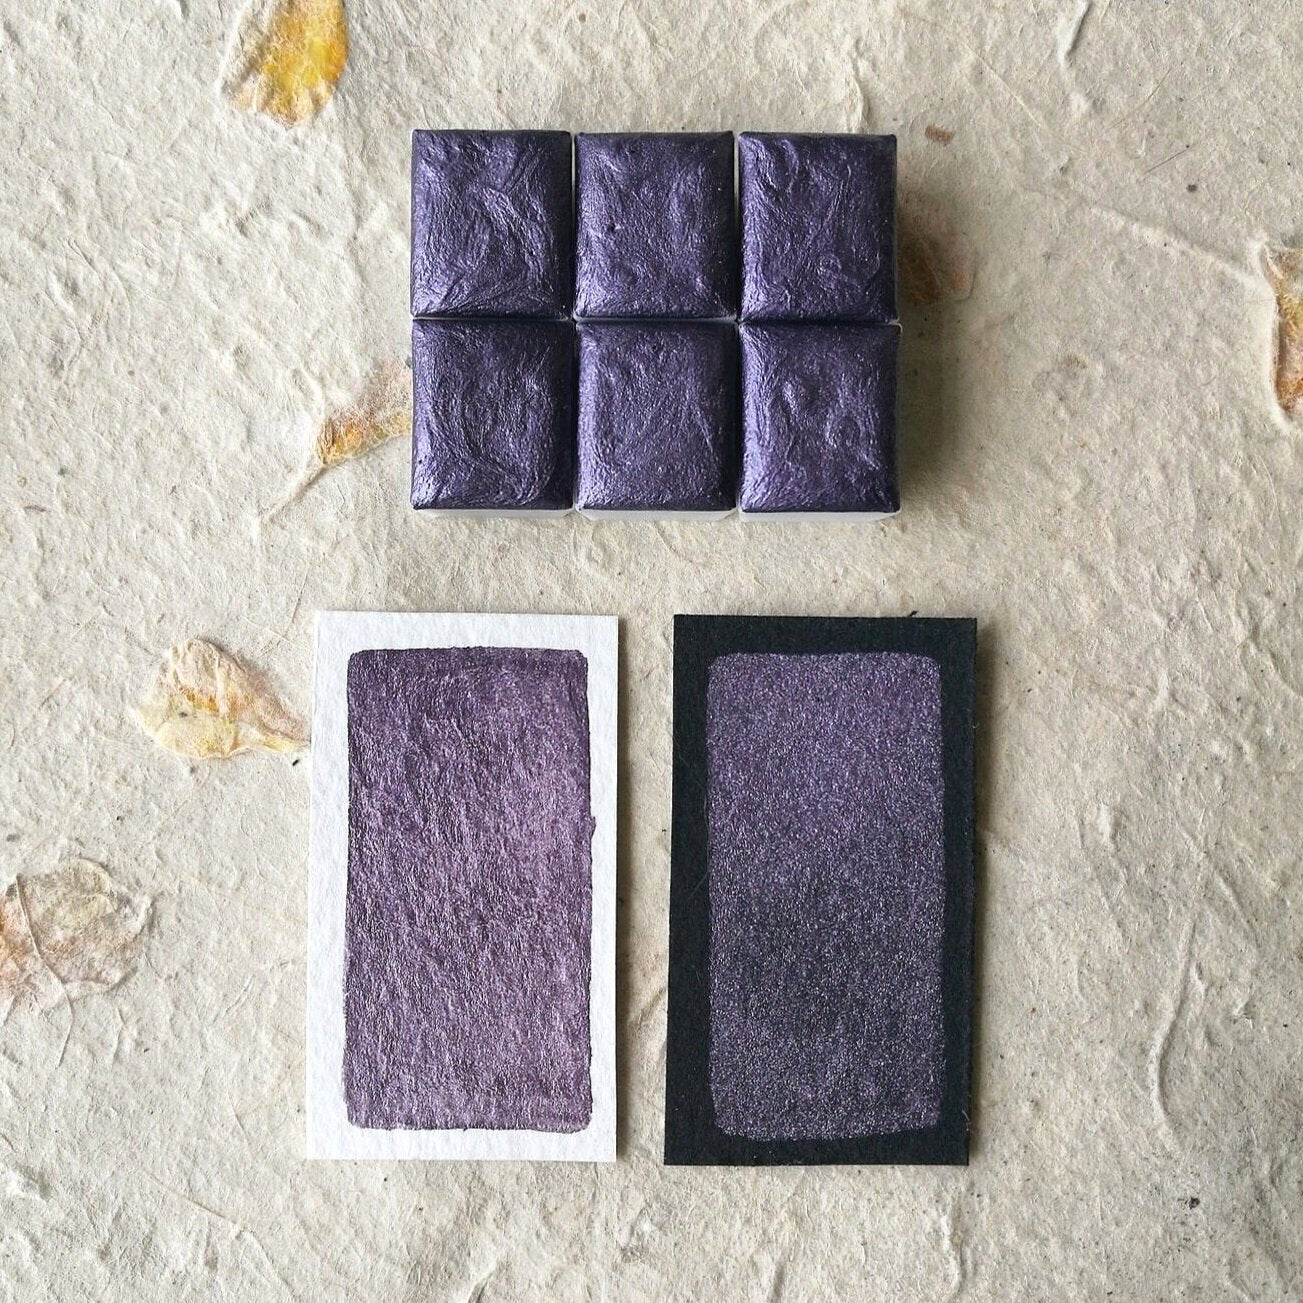 Discontinuing - "Silk Road" - Violet Shimmer - Individual Half Pan